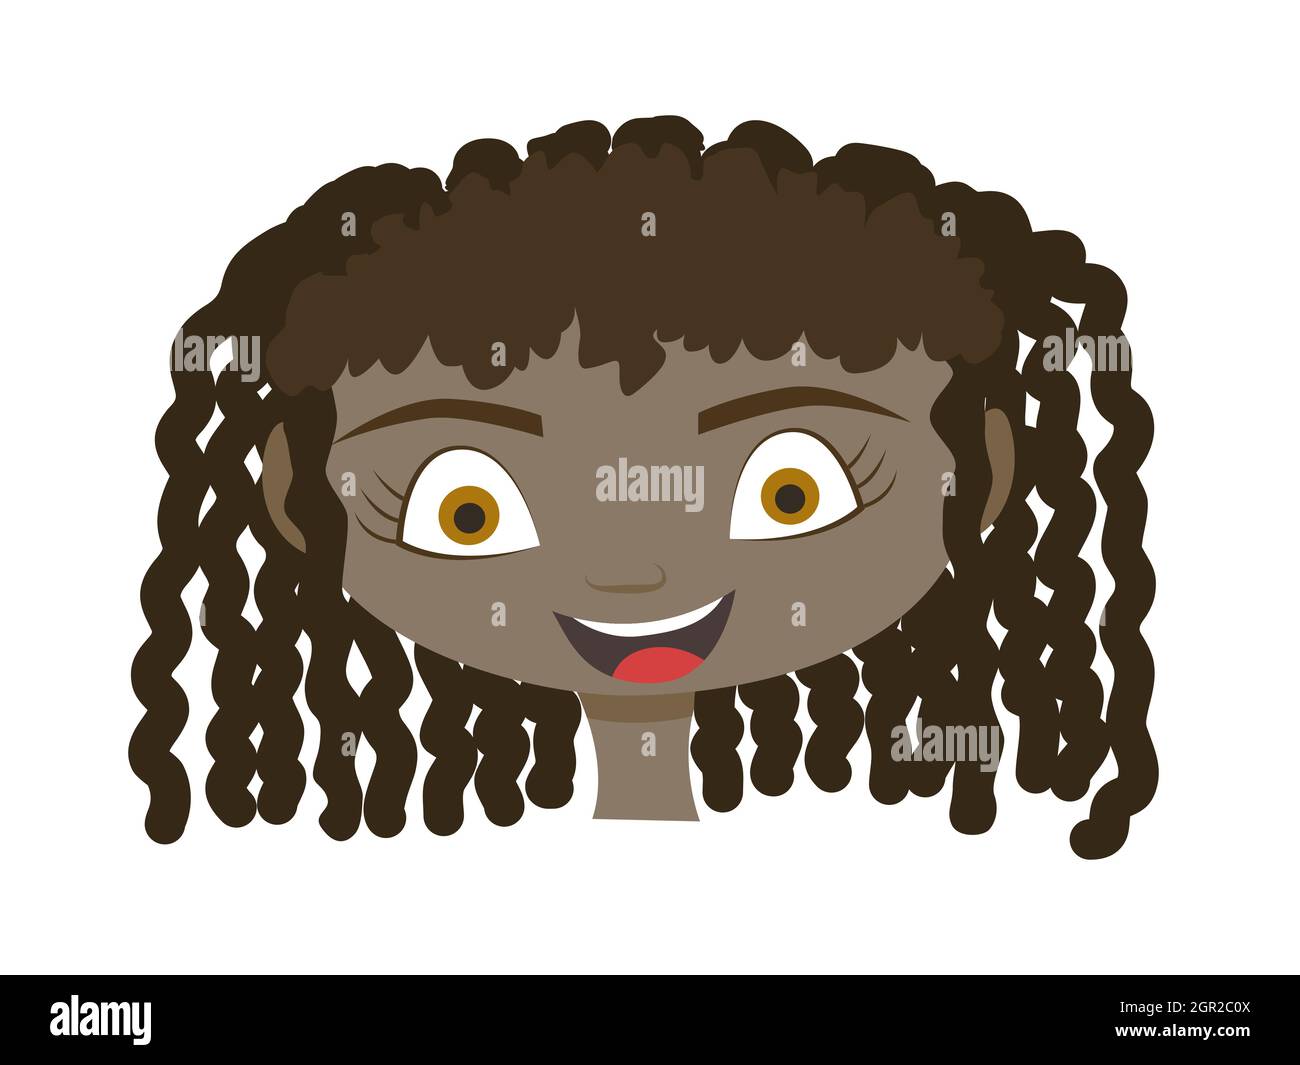 Handgezogener Kopf eines 7-10-jährigen Mädchens mit dunklem Haar und dunkler Haut. Vektor-Illustration eines kleinen Mädchens. Stock Vektor